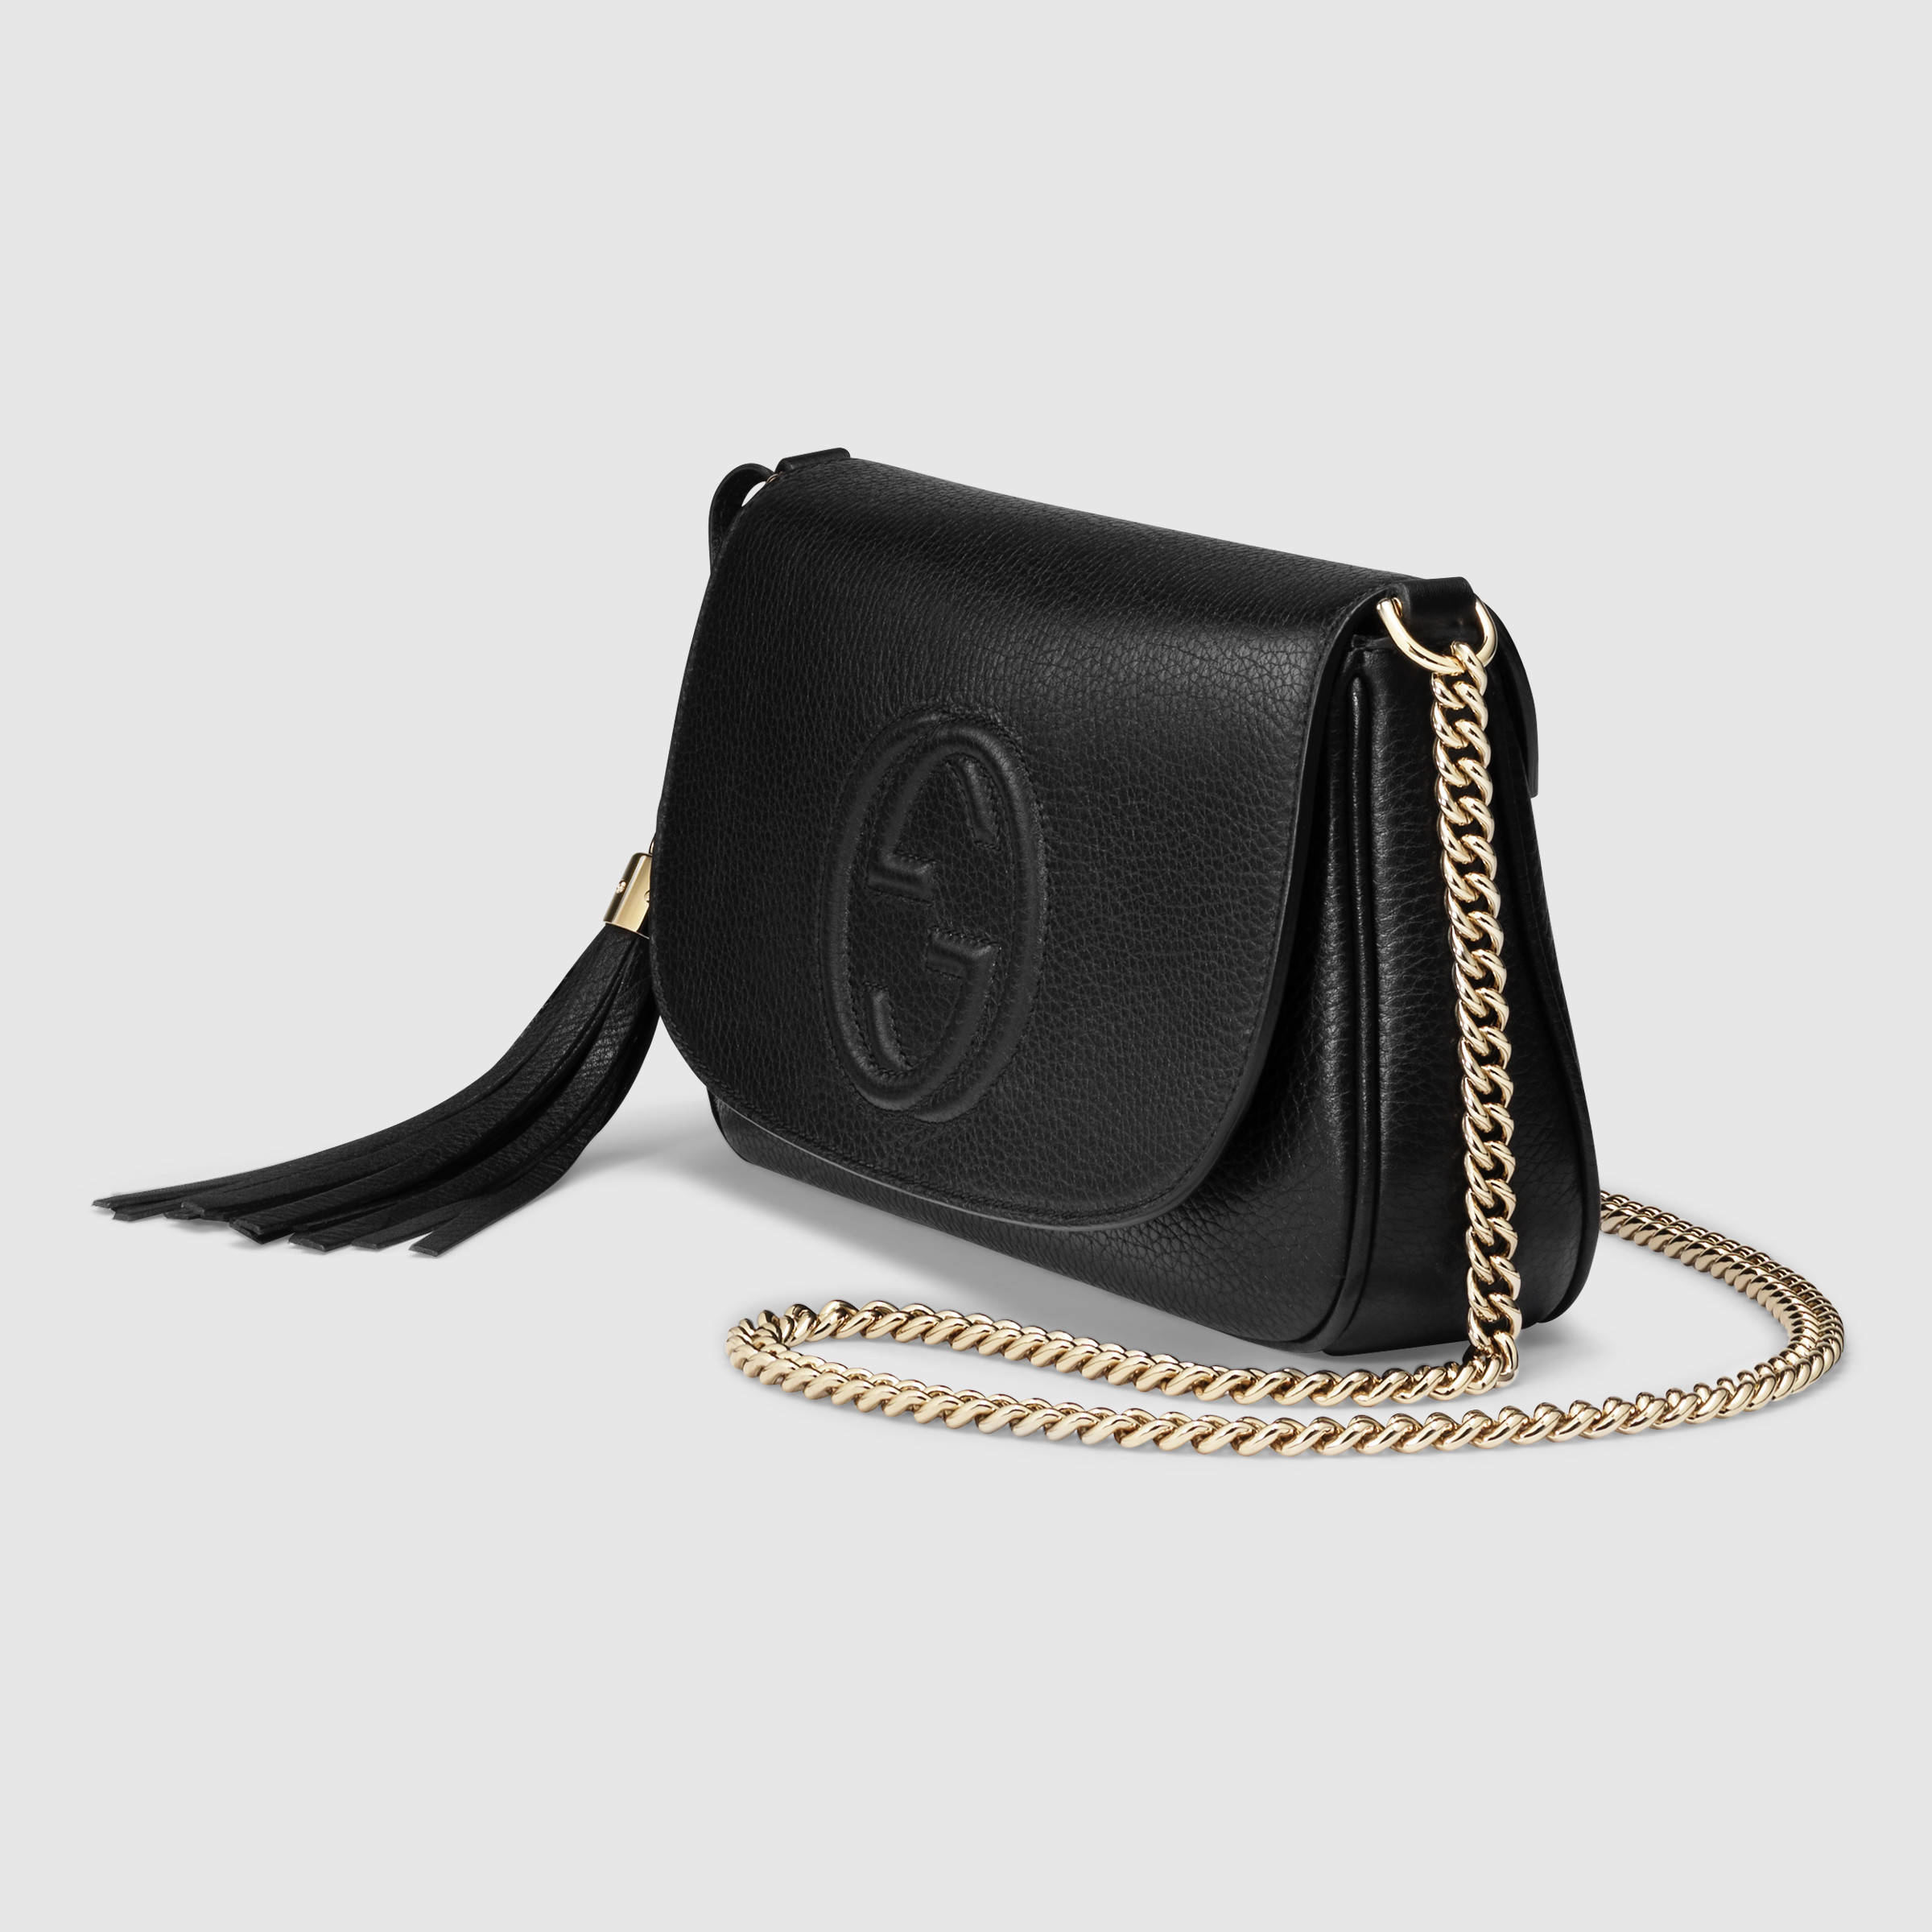 Gucci Soho Leather Shoulder Bag in Black Leather (Black) - Lyst